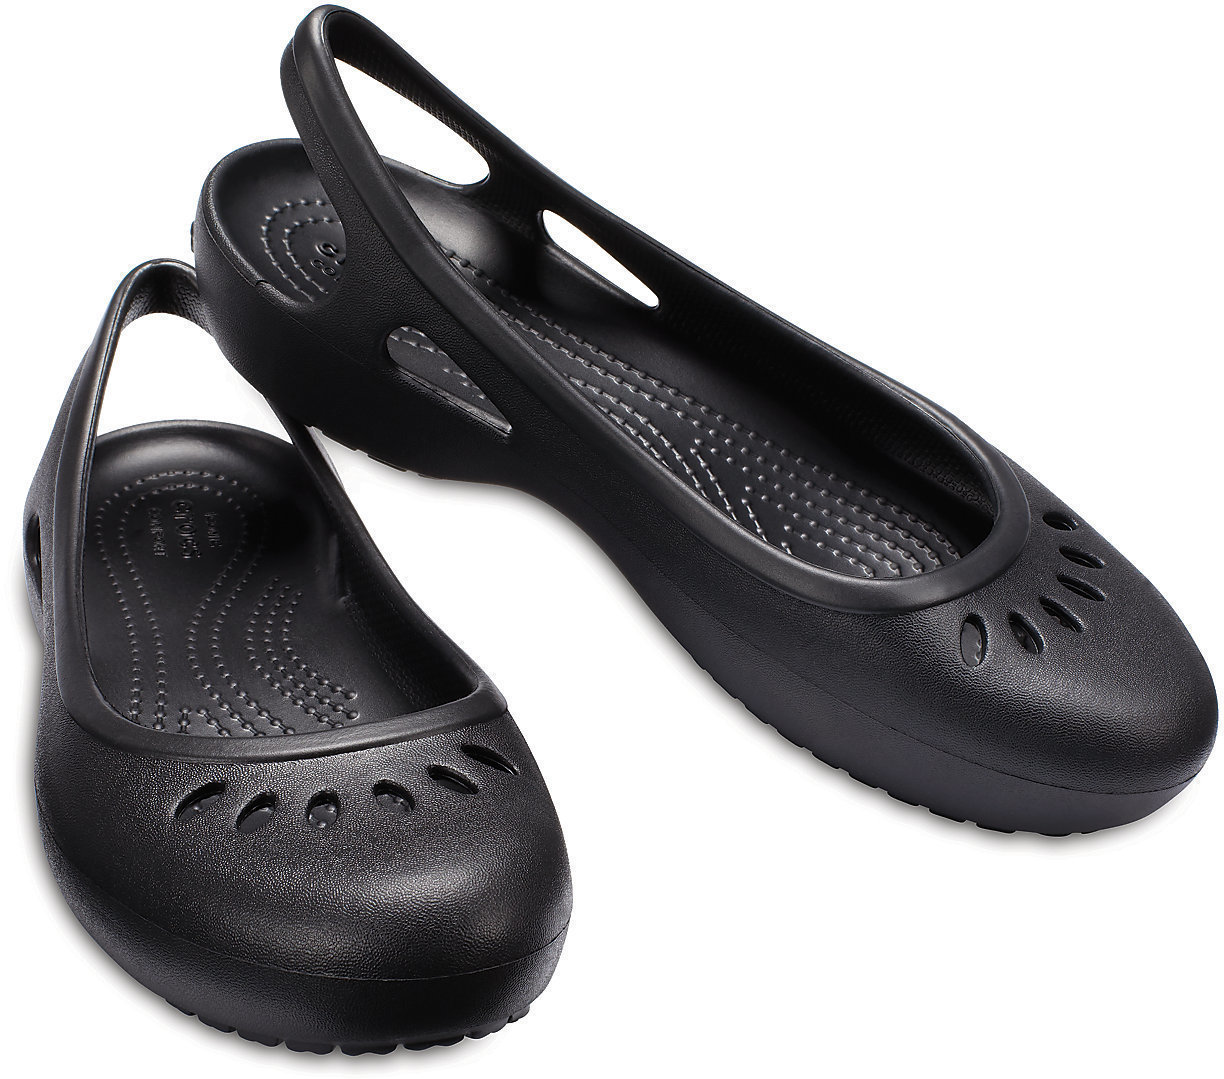 Jachtařská obuv Crocs Kadee Slingback Women Black 34-35